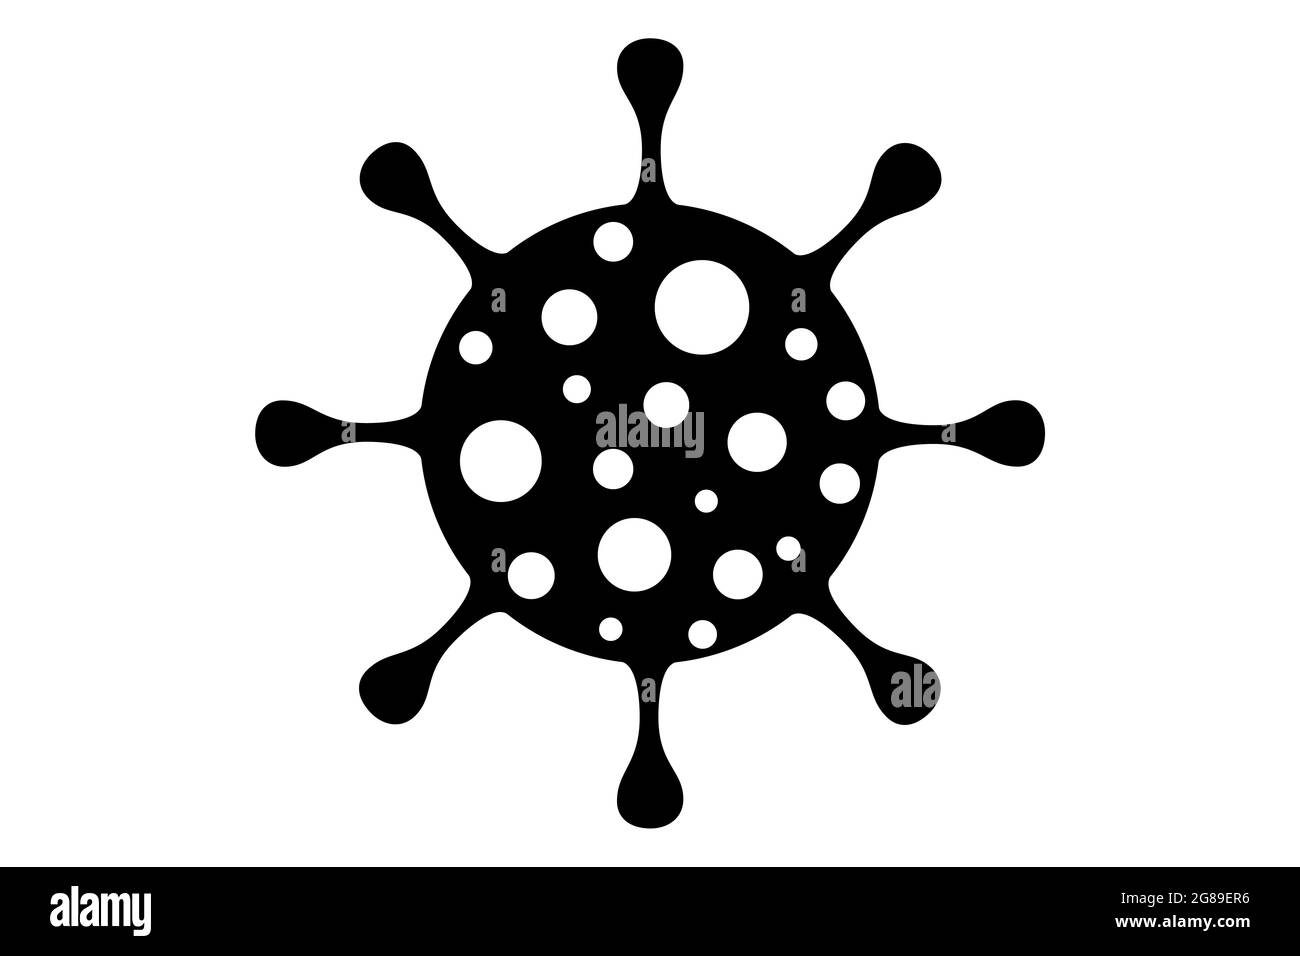 Coronavirus 2019-nCoV. Corona virus icona-design. Nero su sfondo bianco isolato. Infezione delle malattie respiratorie (focolaio di malattia). Pandemia influenzale. Foto Stock